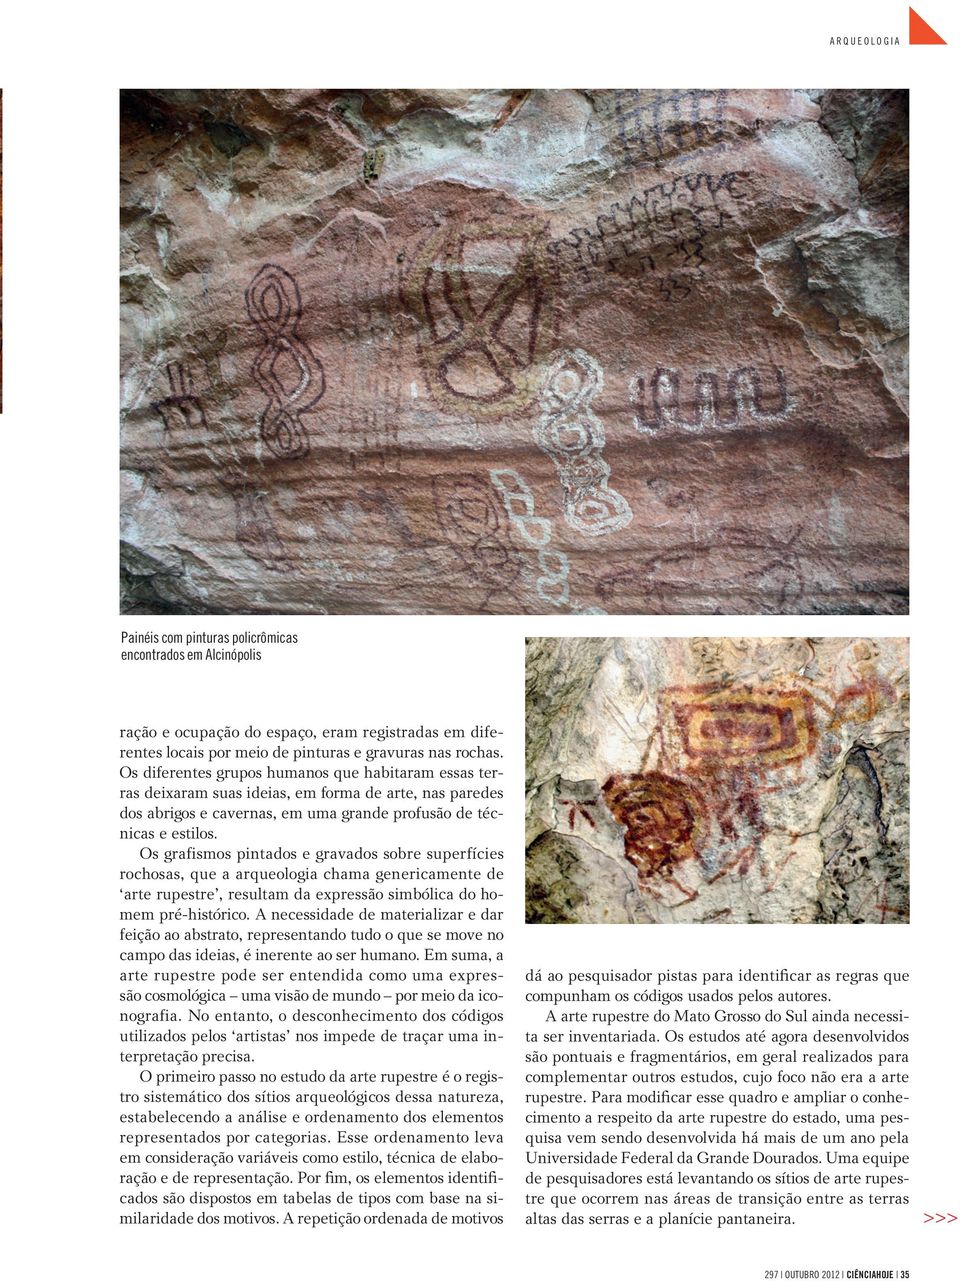 Os grafismos pintados e gravados sobre superfícies rochosas, que a arqueologia chama genericamente de arte rupestre, resultam da expressão simbólica do homem pré-histórico.